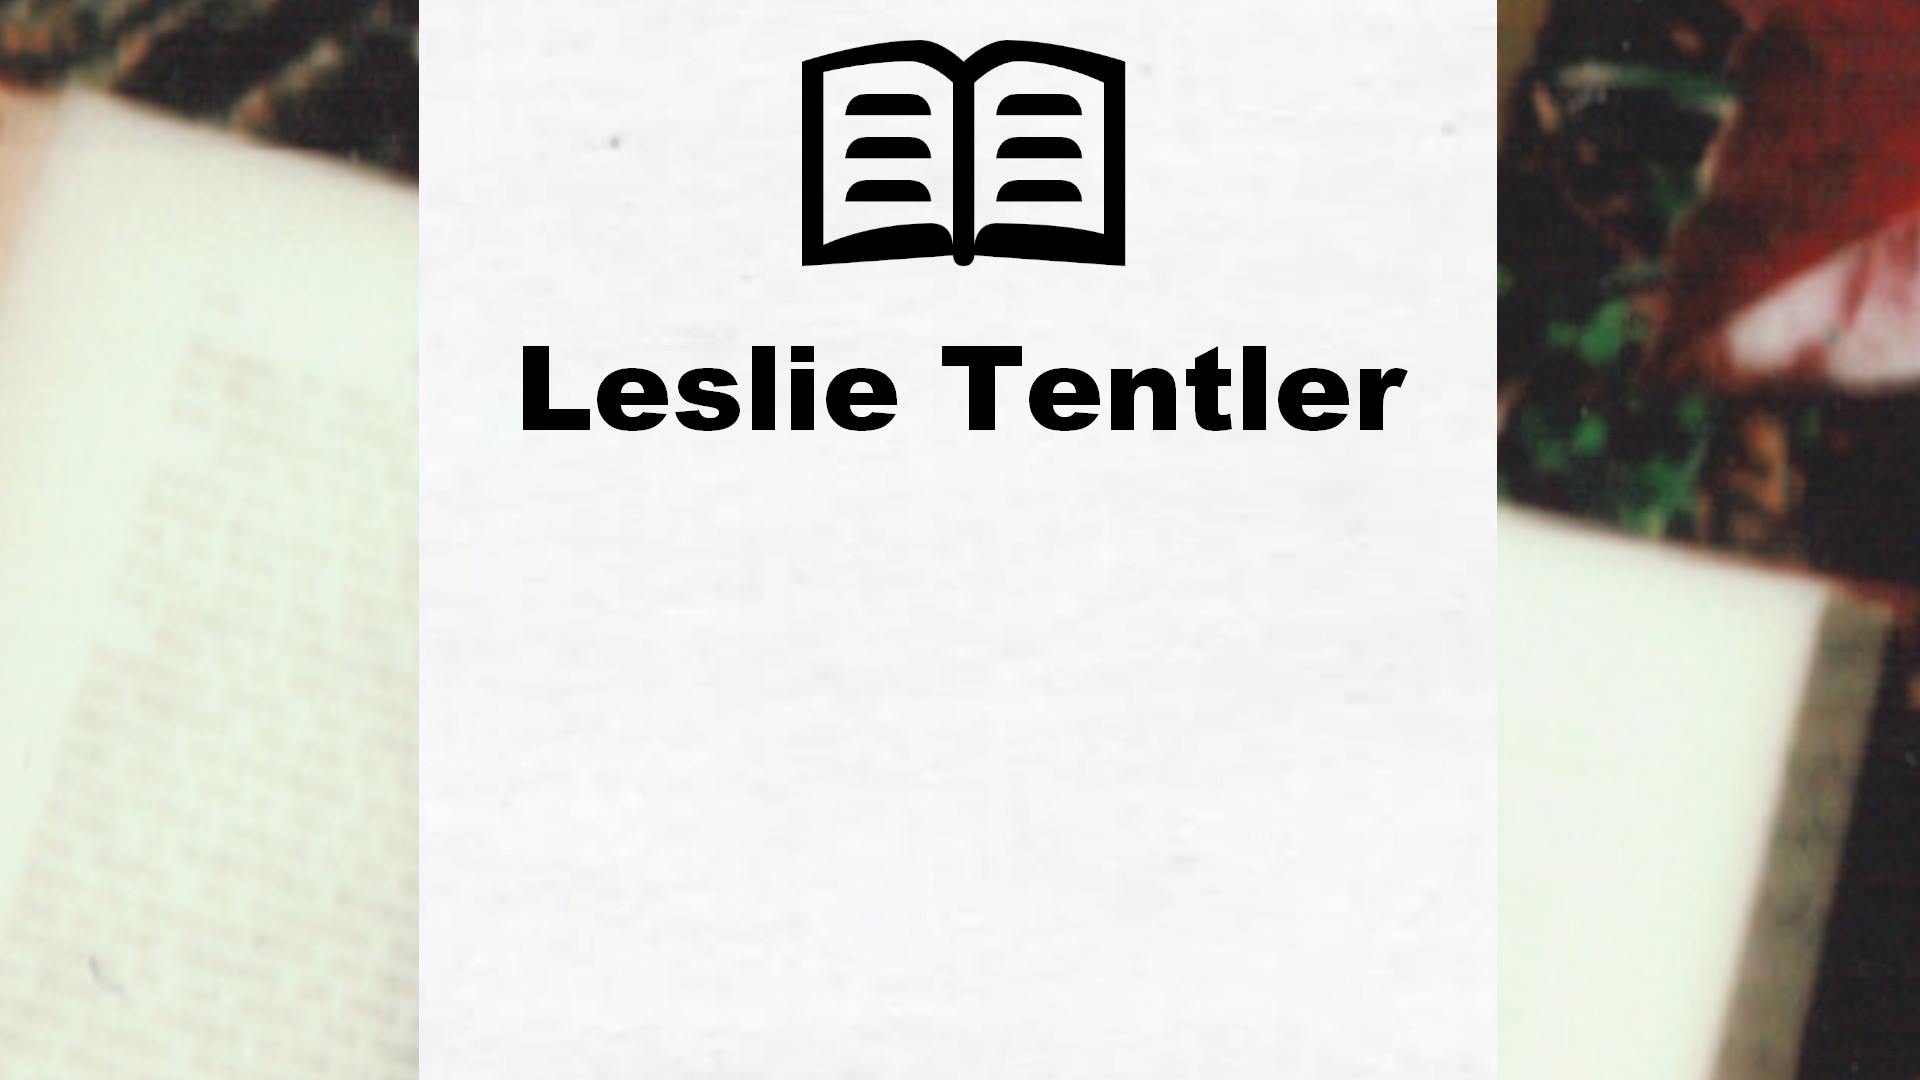 Livres de Leslie Tentler